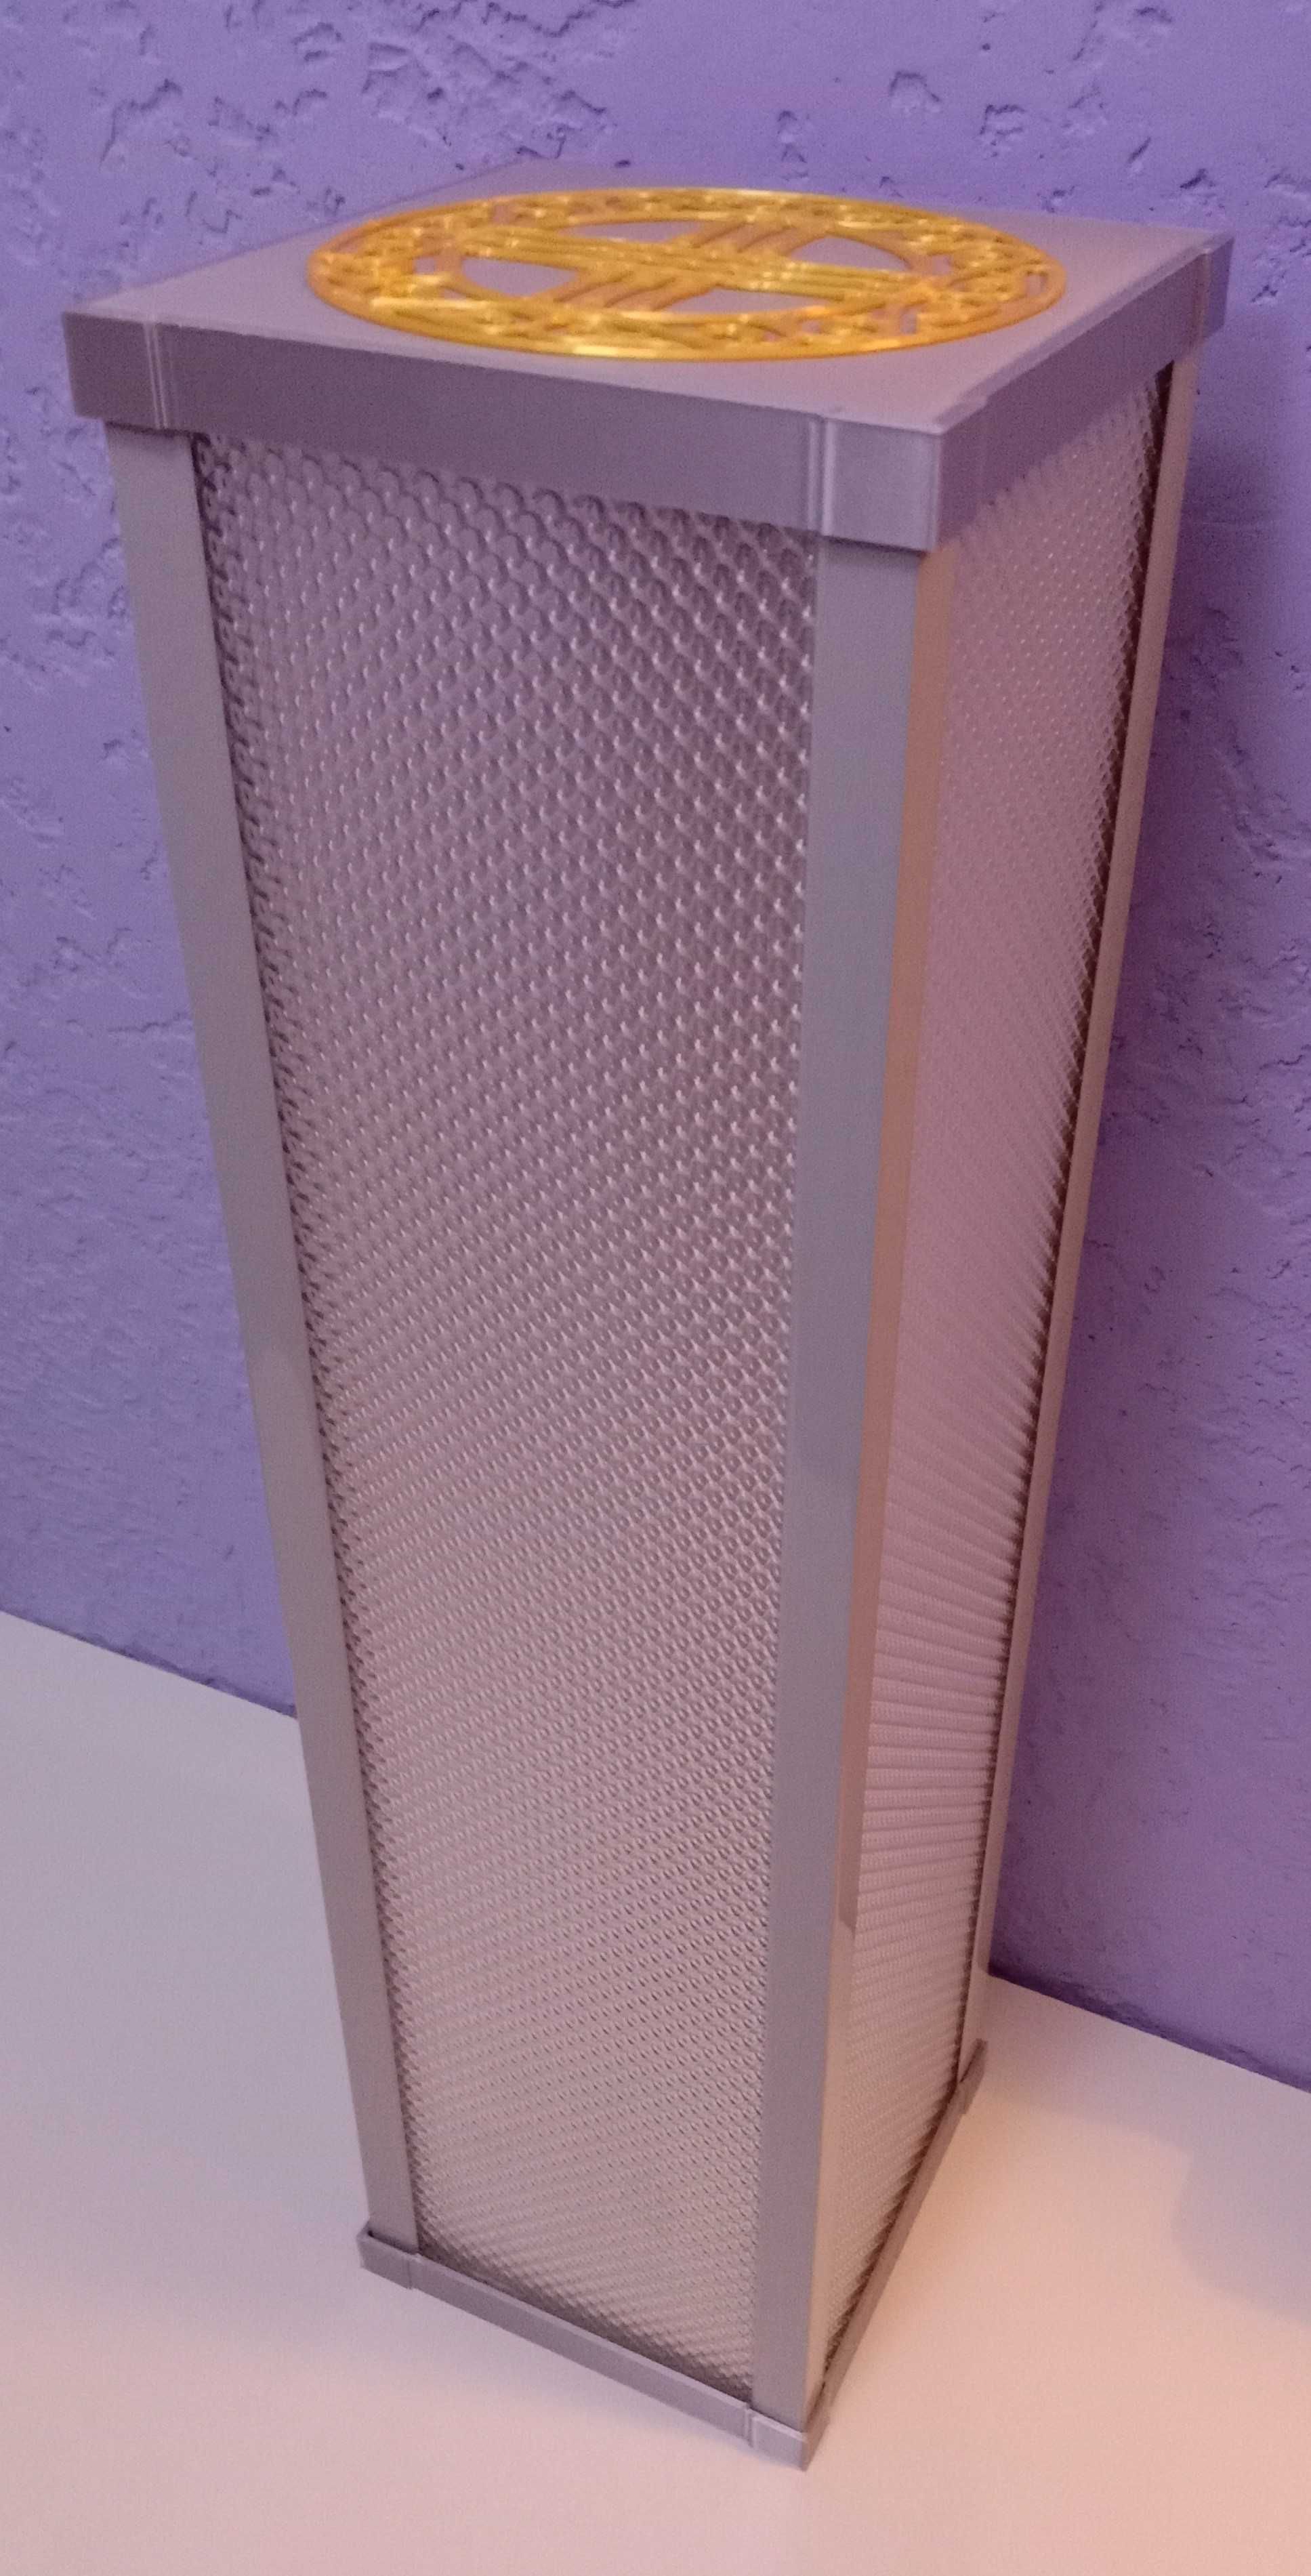 Большой, эксклюзивный RGB LED светильник в стиле "Шаңырақ"